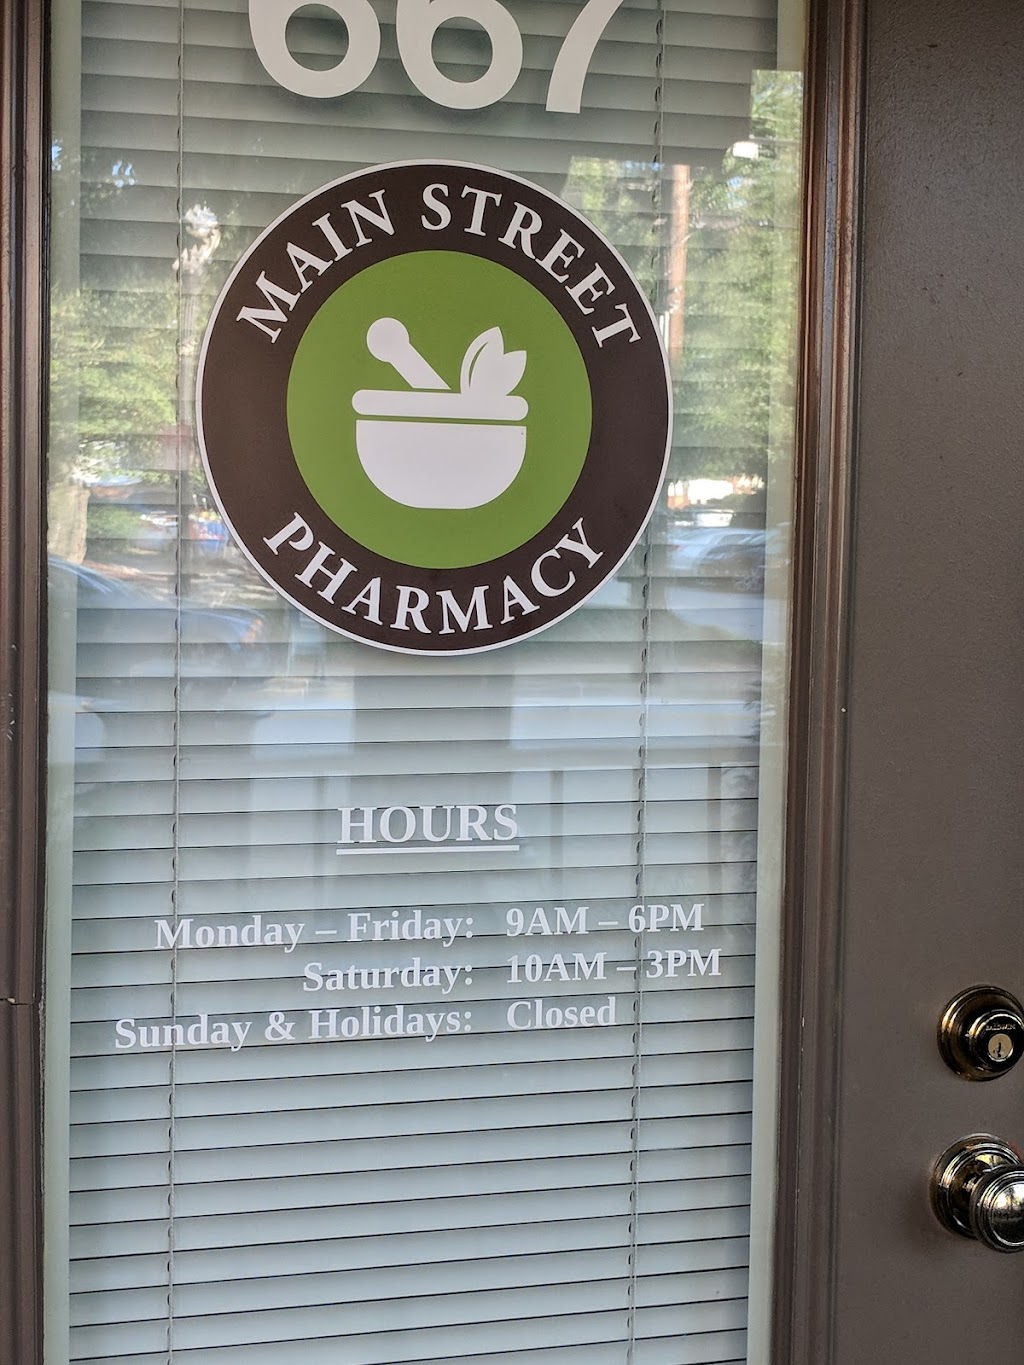 Main Street Pharmacy | 667 Main St, Laurel, MD 20707 | Phone: (301) 317-3838